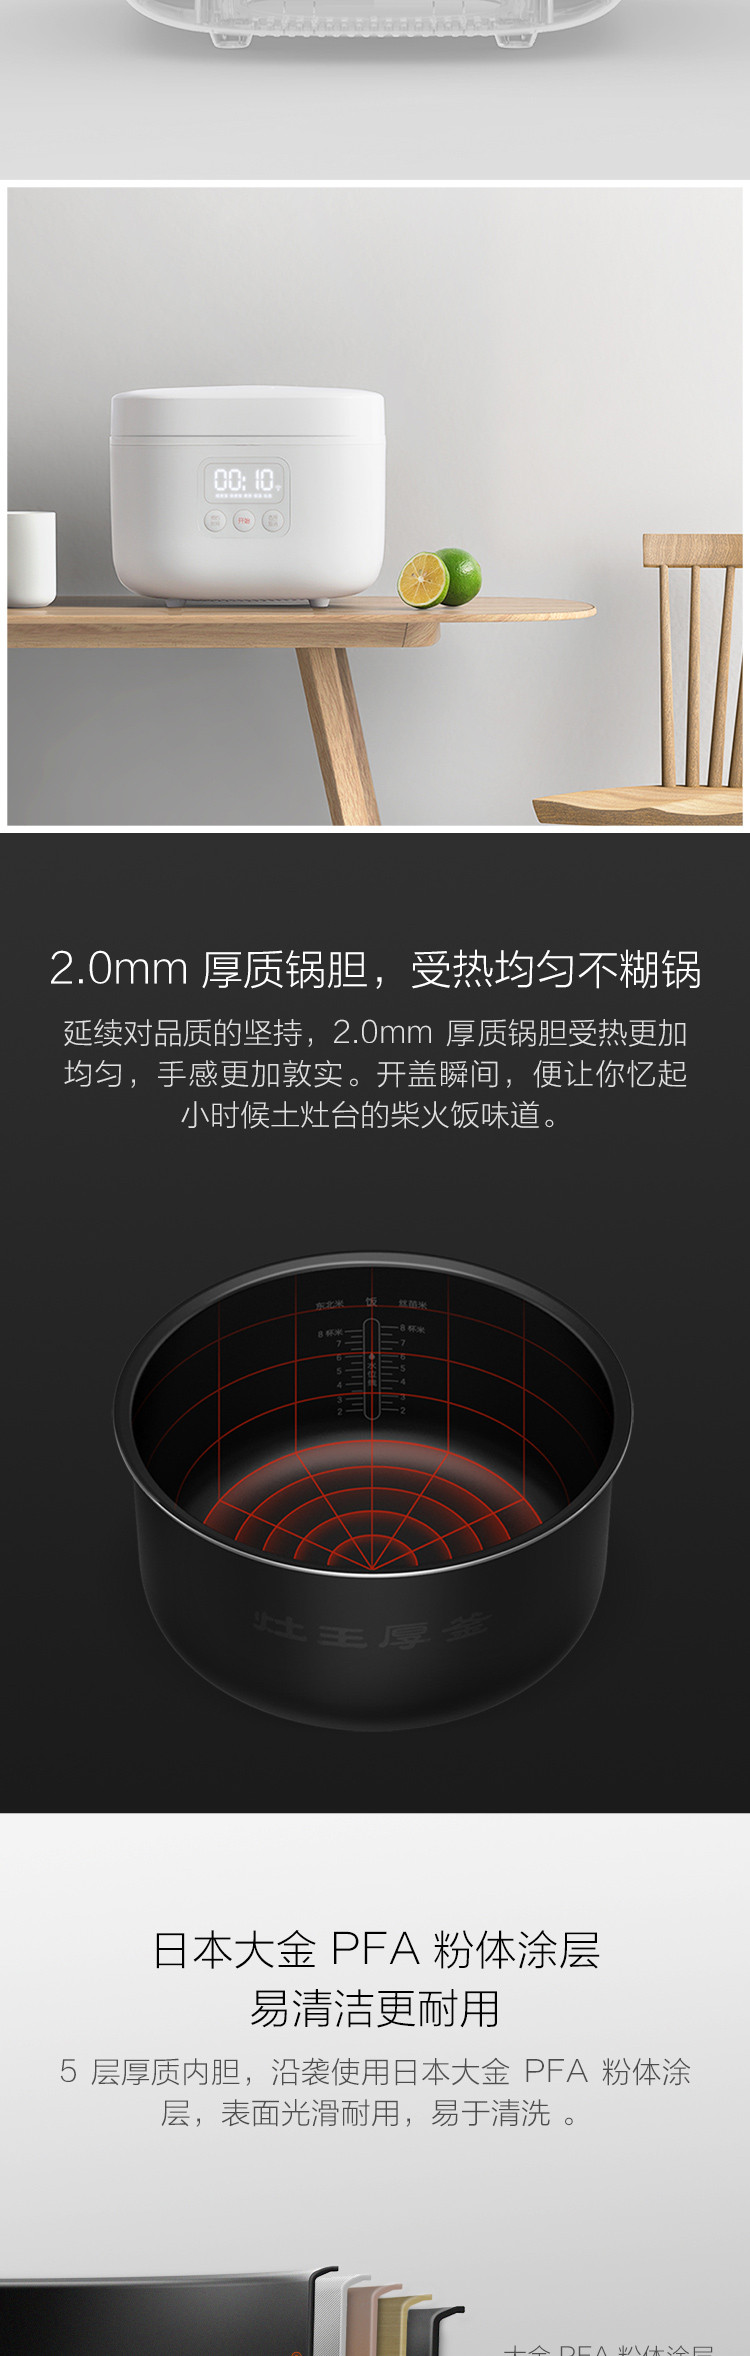 小米/MIUI 米家电饭煲4L 大容量 智能电饭煲 小爱同学语音控制 2.0mm厚质锅